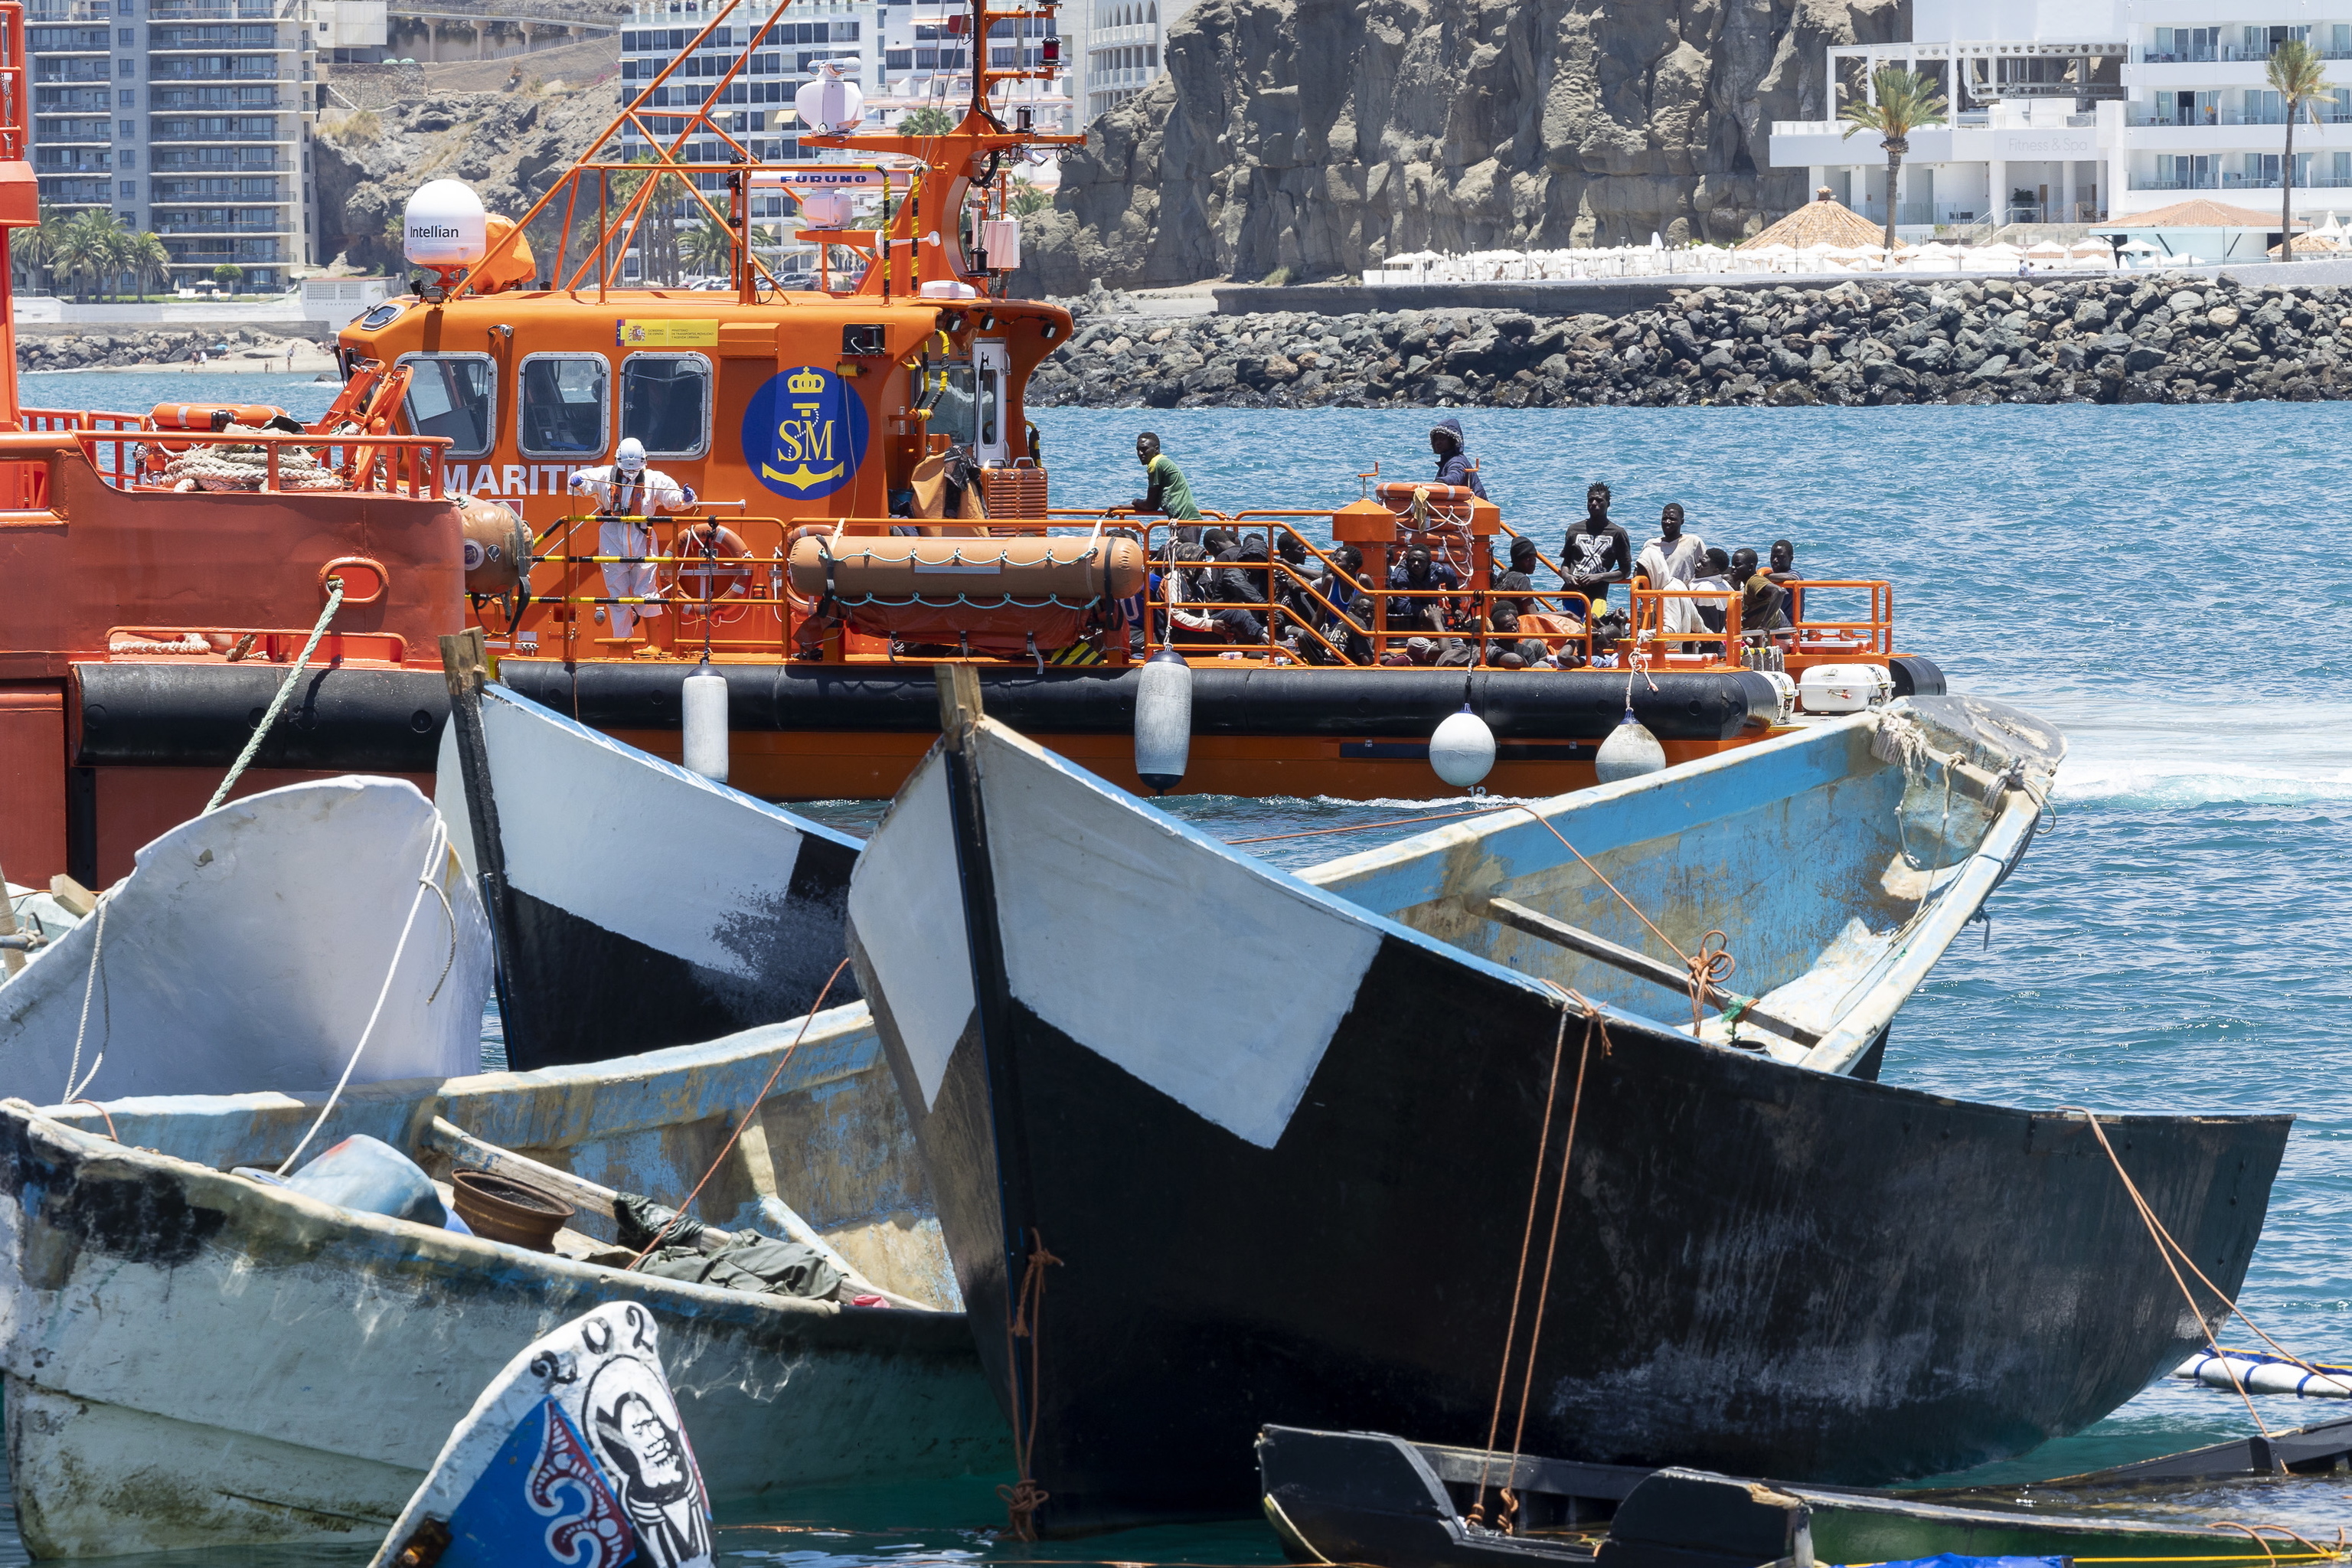 Salvamento Martimo traslada a un grupo de inmigrantes al puerto de Arguinegun (Gran Canaria), al lado de pateras rescatadas en el pasado.